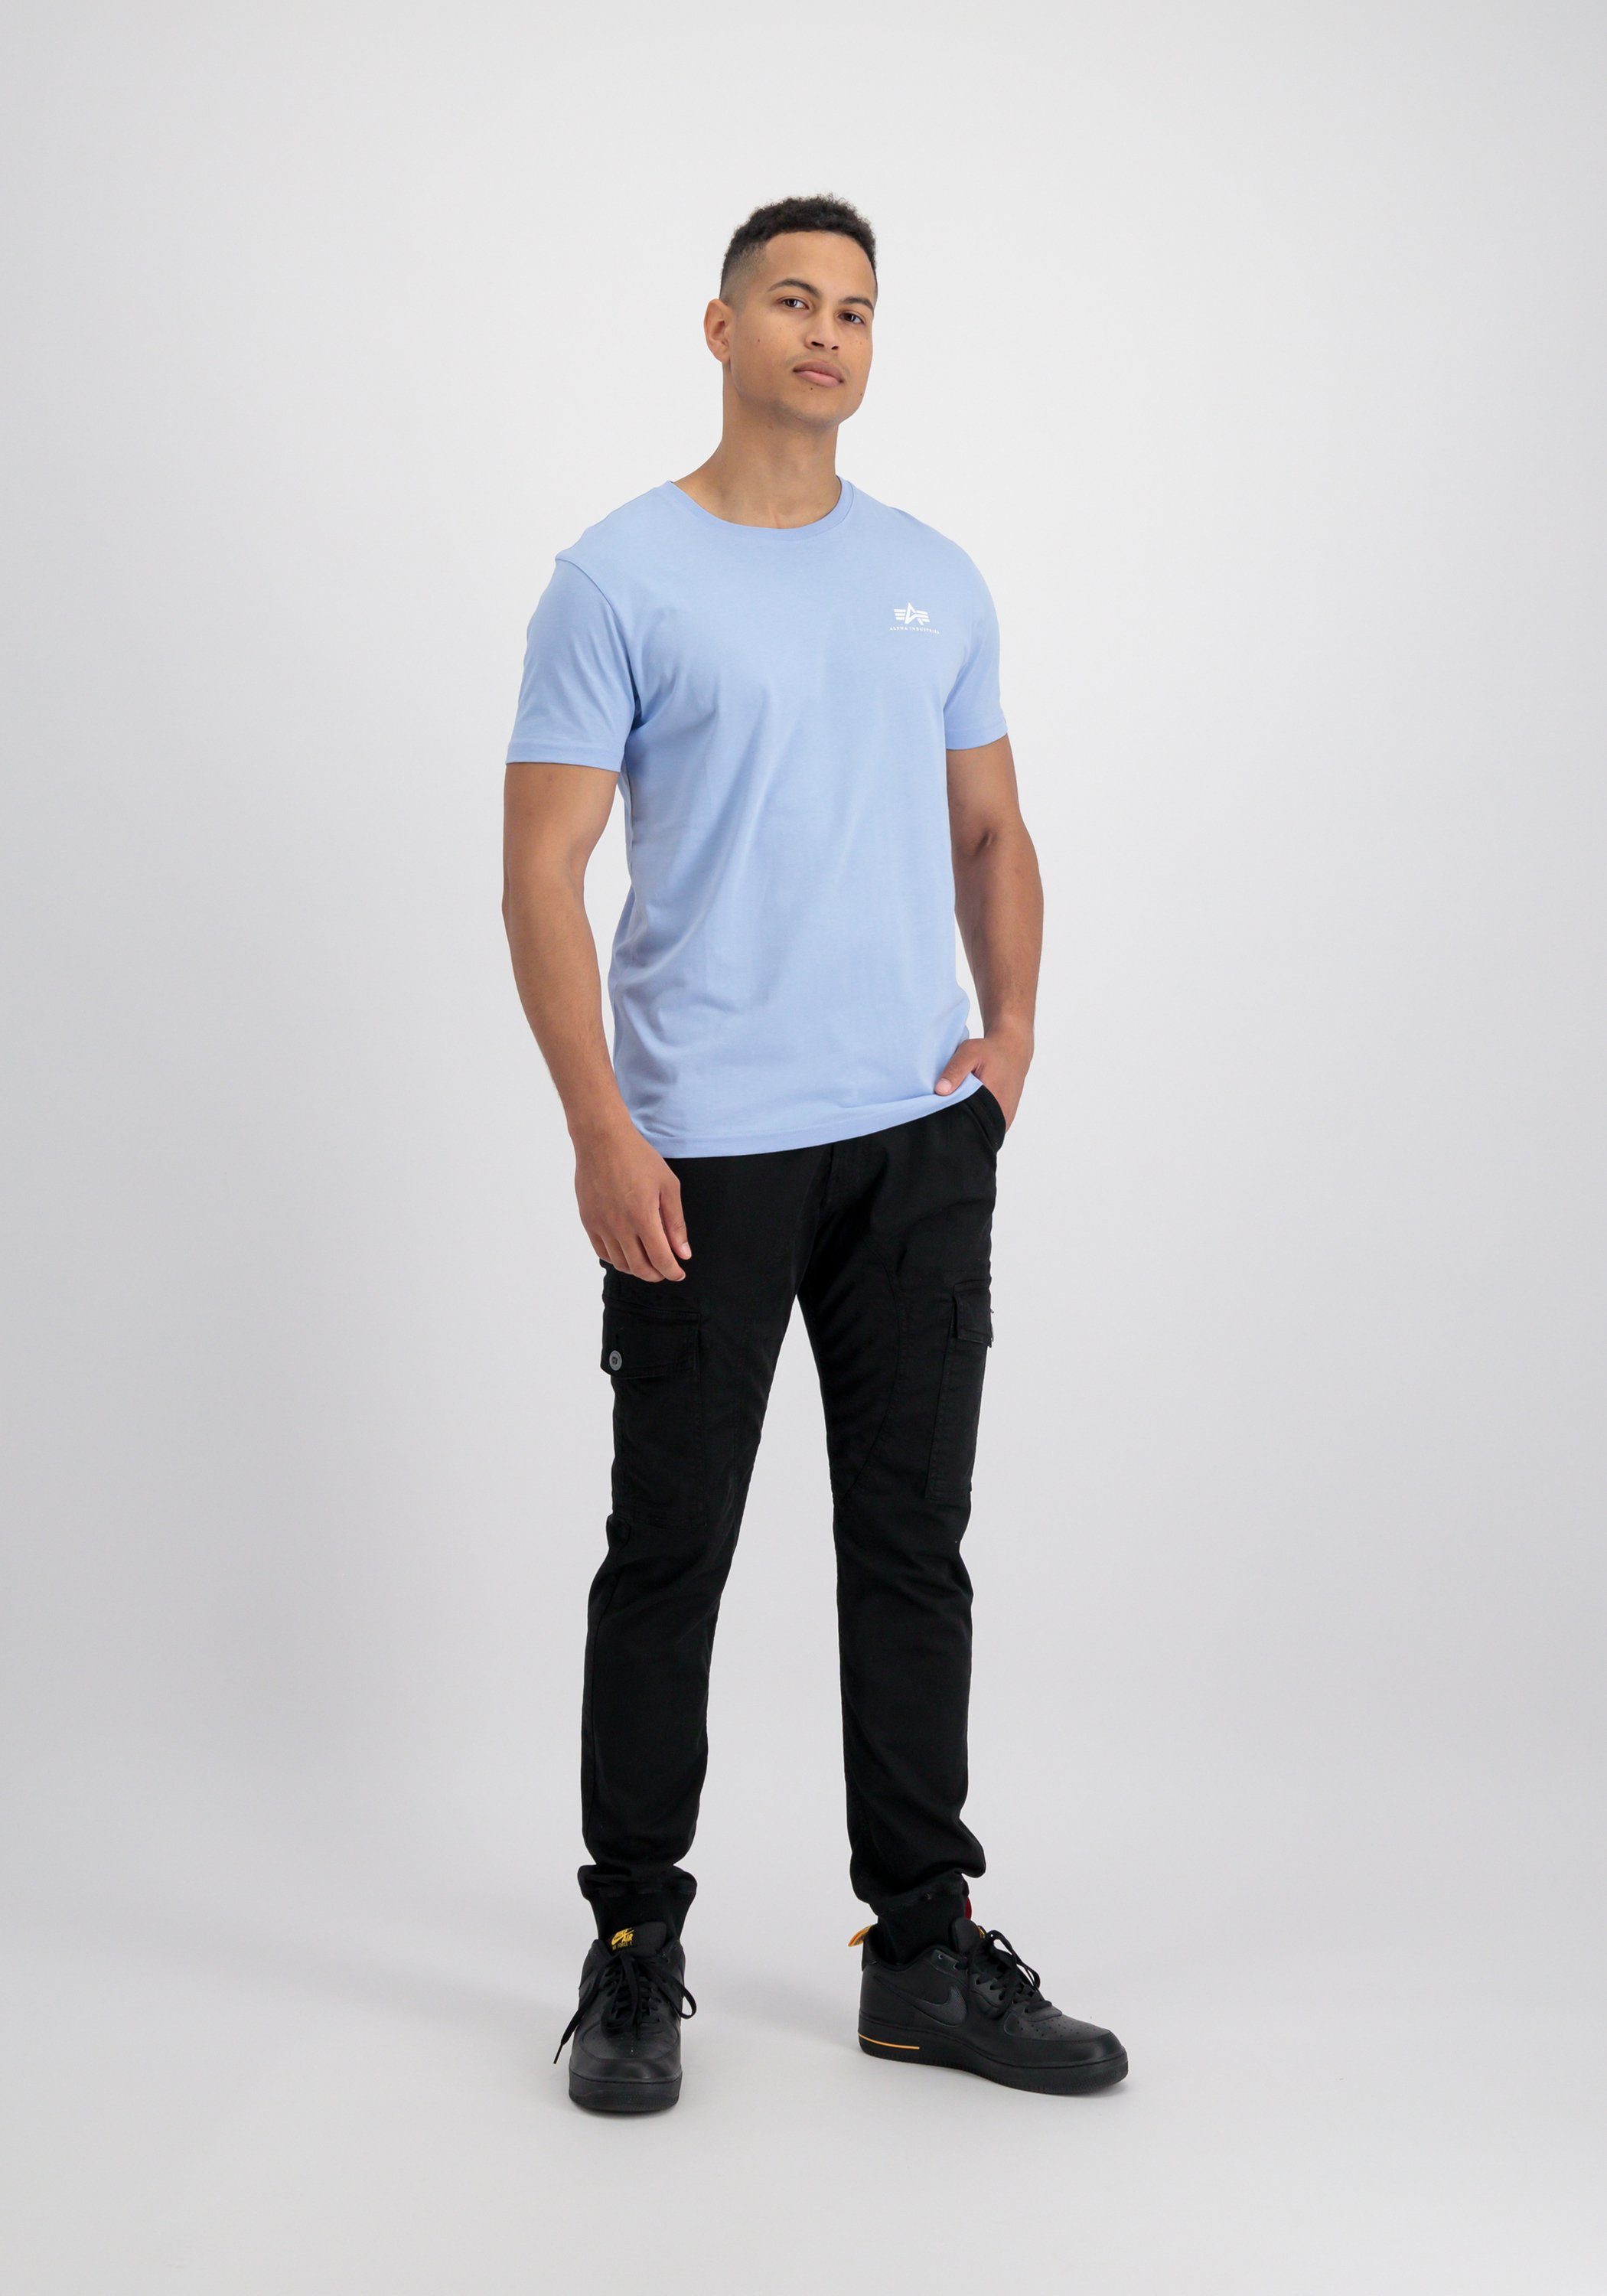 【Aufrichtigkeit】 Alpha Industries T-Shirt T-Shirts T Men - blue light Alpha Backprint Industries